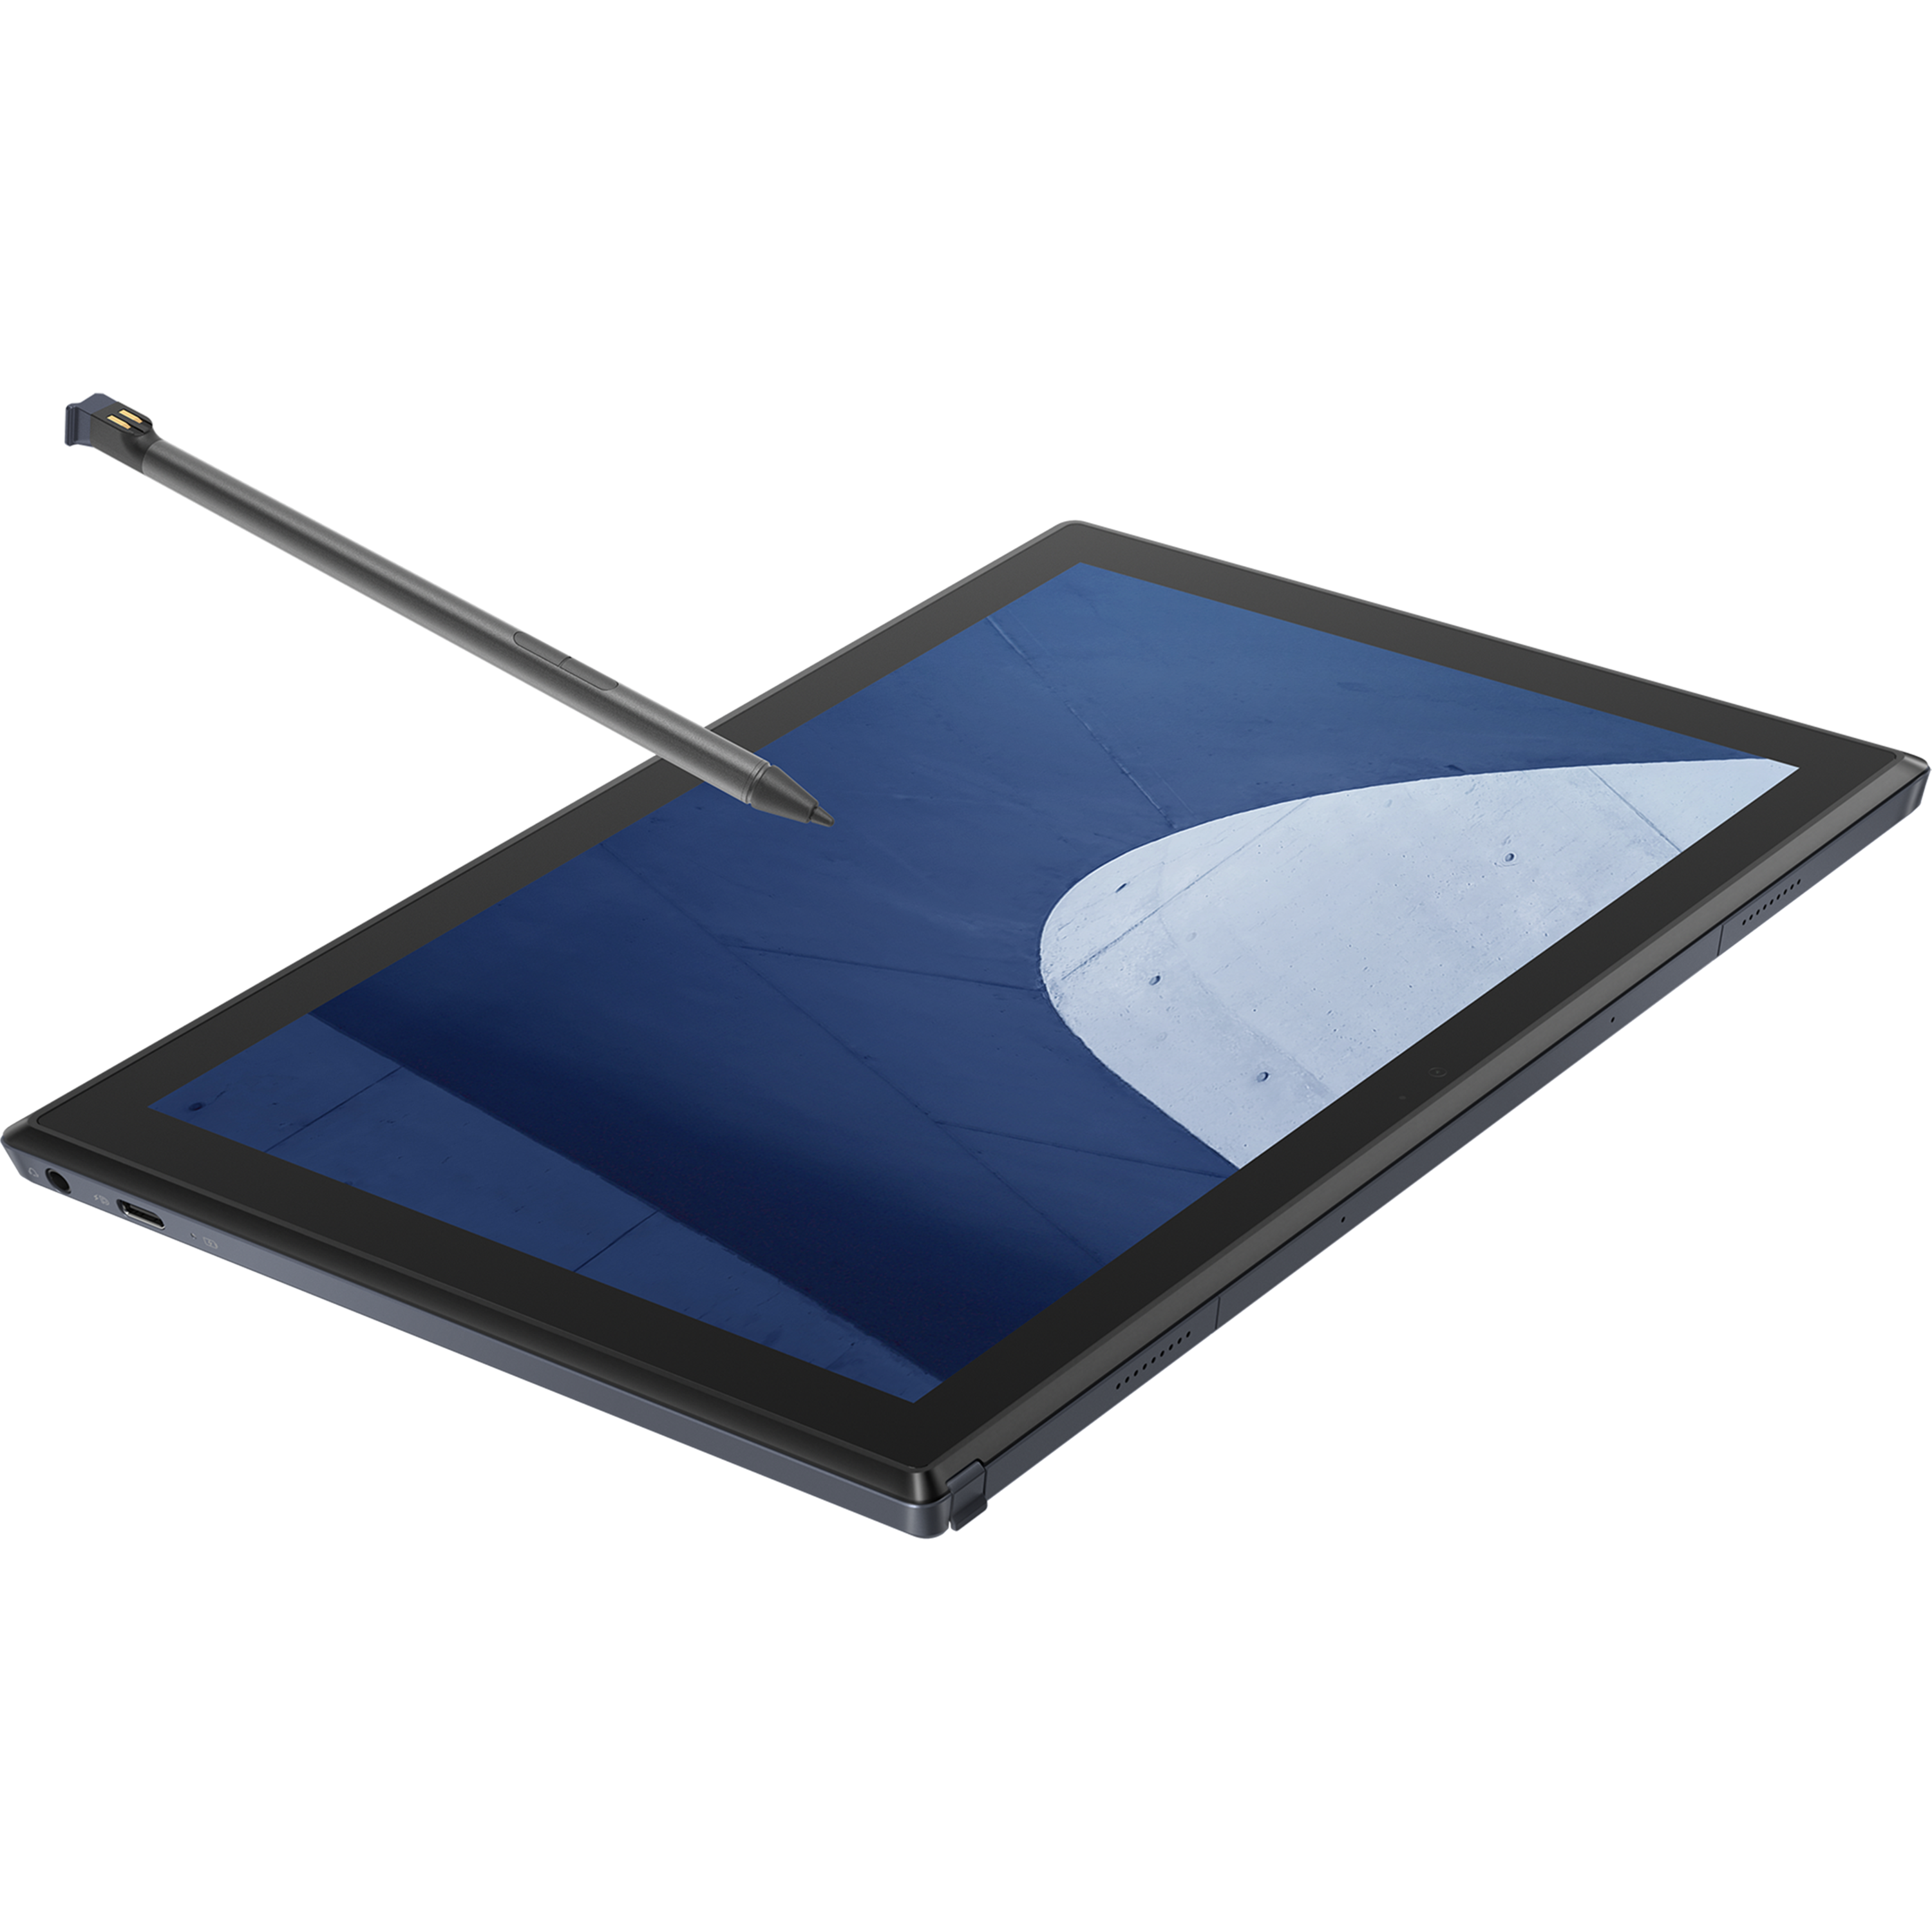 מחשב נייד עם מסך מגע Asus ExpertBook B3 Detachable B3000DQ1A-HT0153M - Snapdragon 7c Gen 2 128GB eMMC 4GB RAM Windows 11 - צבע שחור שנה אחריות ע